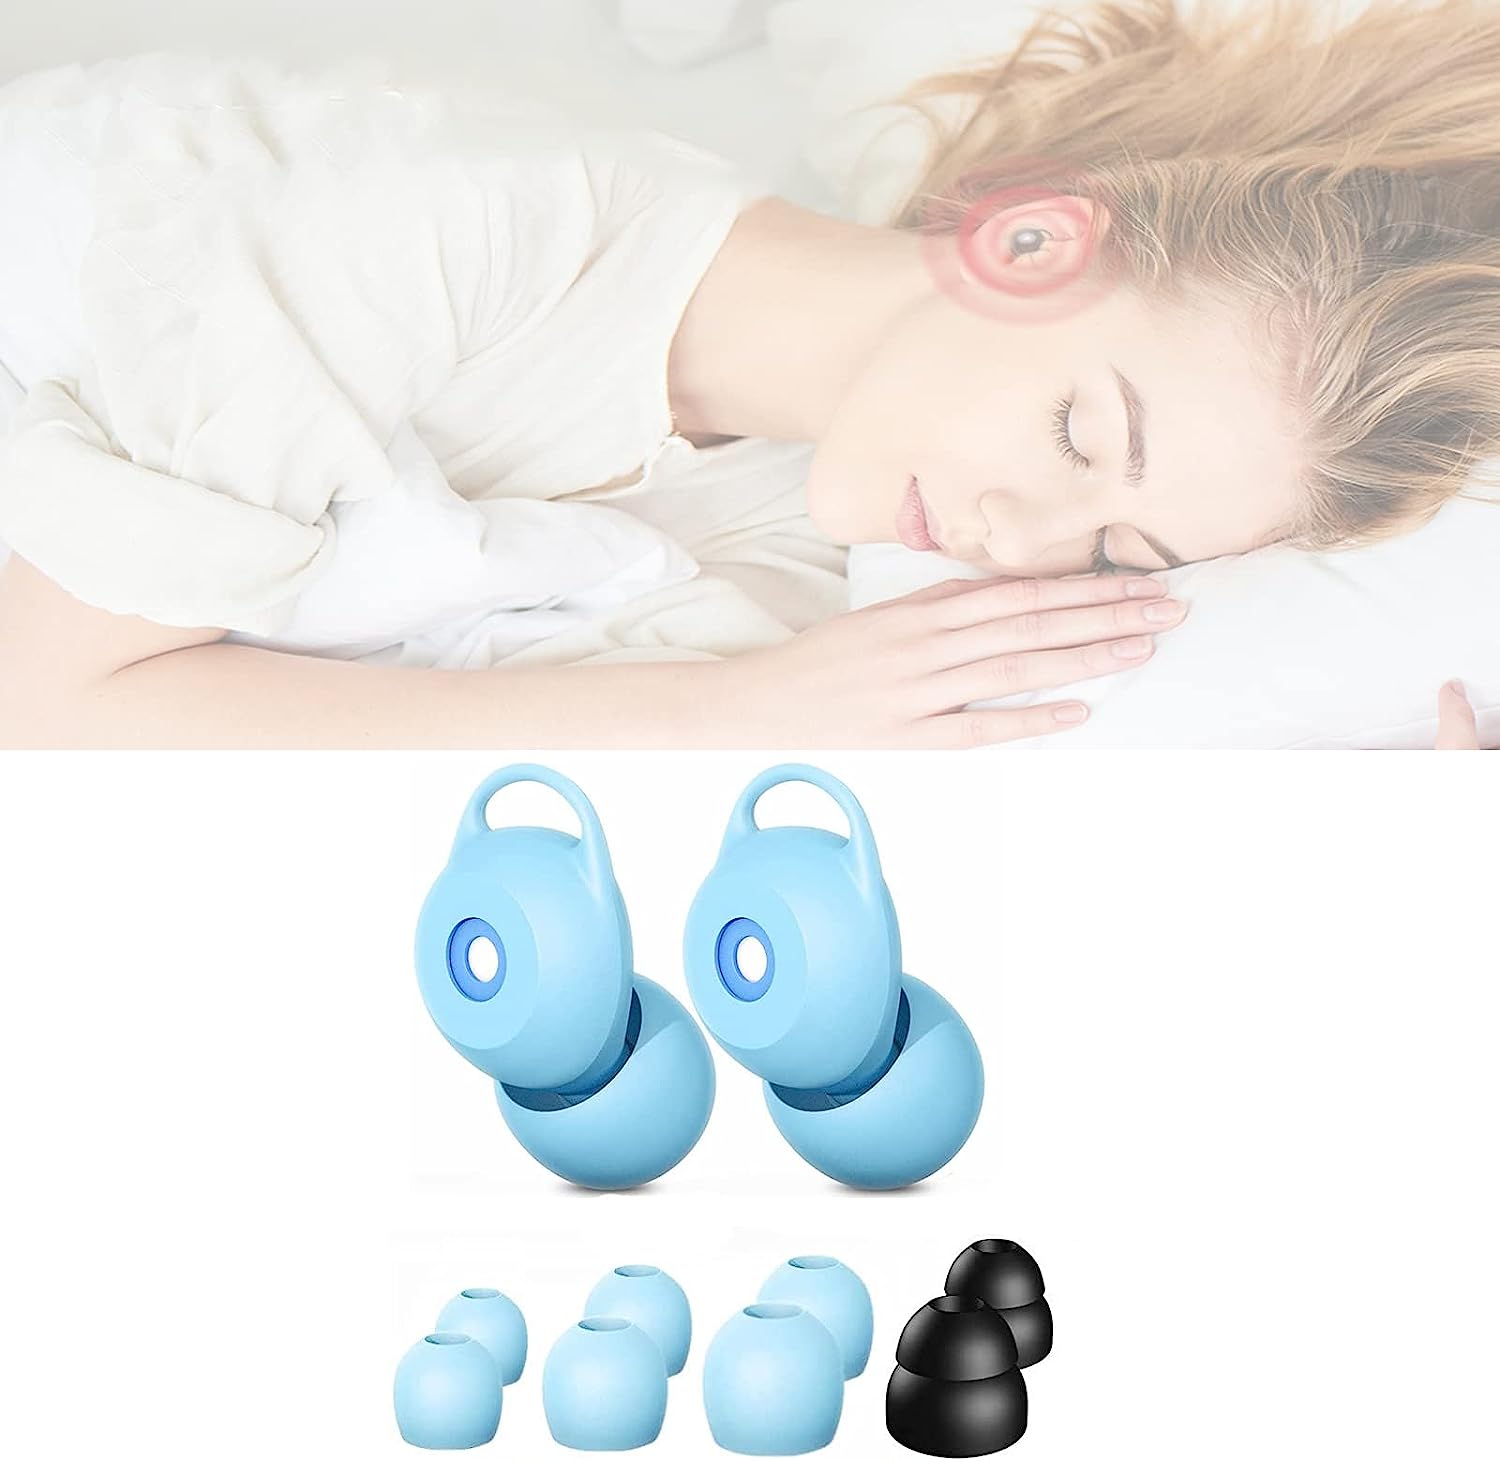 2枚セット 耳栓 耳せん 騒音 遮音 睡眠用 騒音対策 ノイズキャンセリング 本体１ペア+4つサイズ...